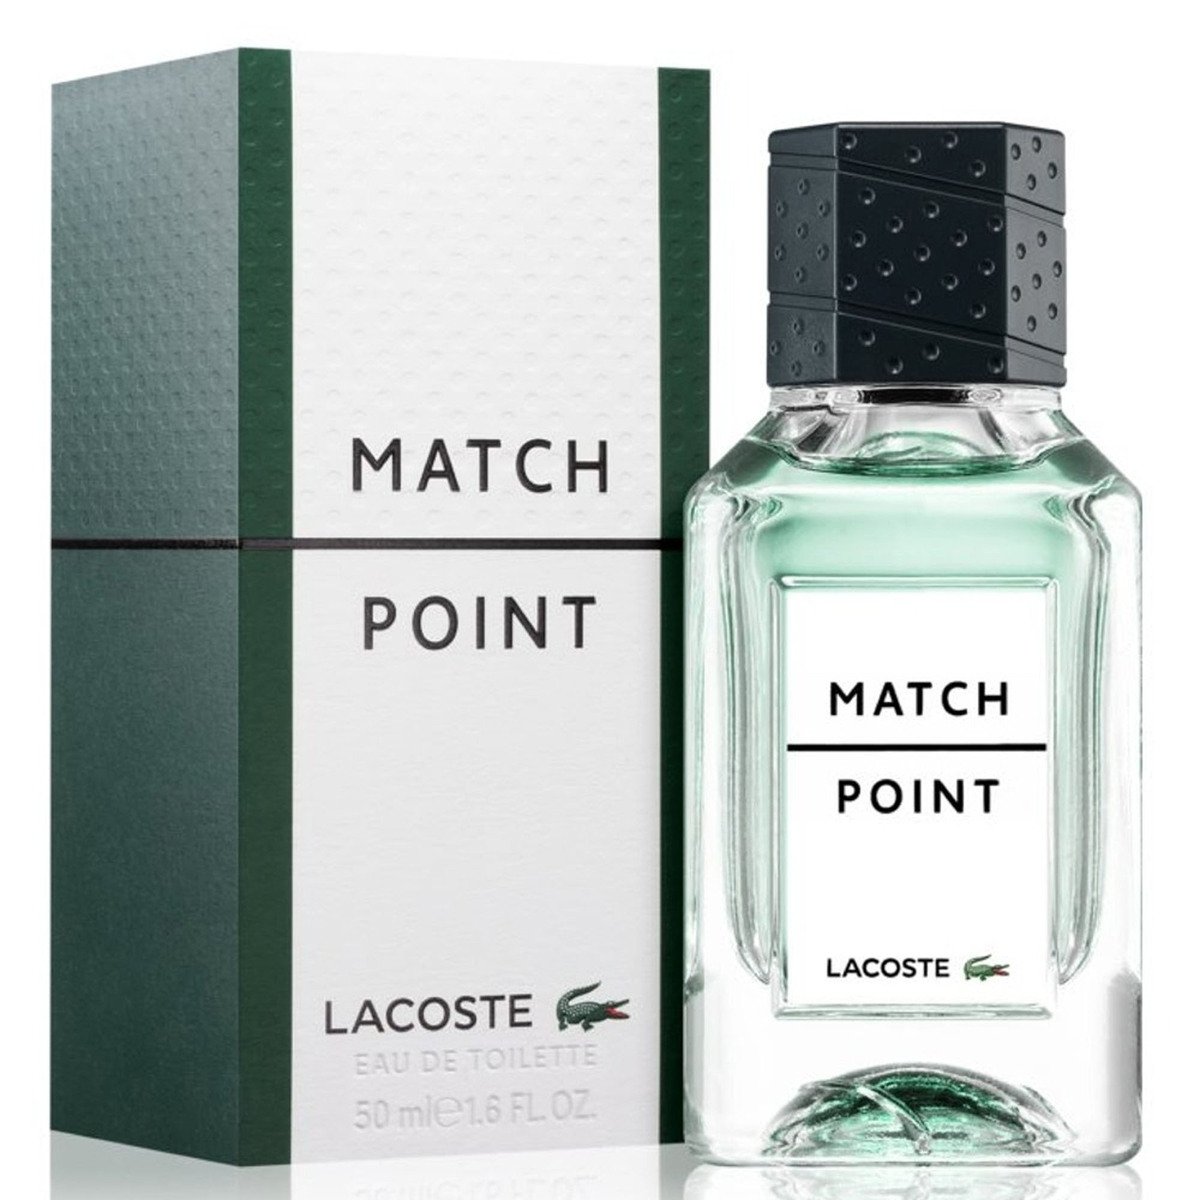 Lacoste Match Point Eau De Toilette For Men, 50 ml